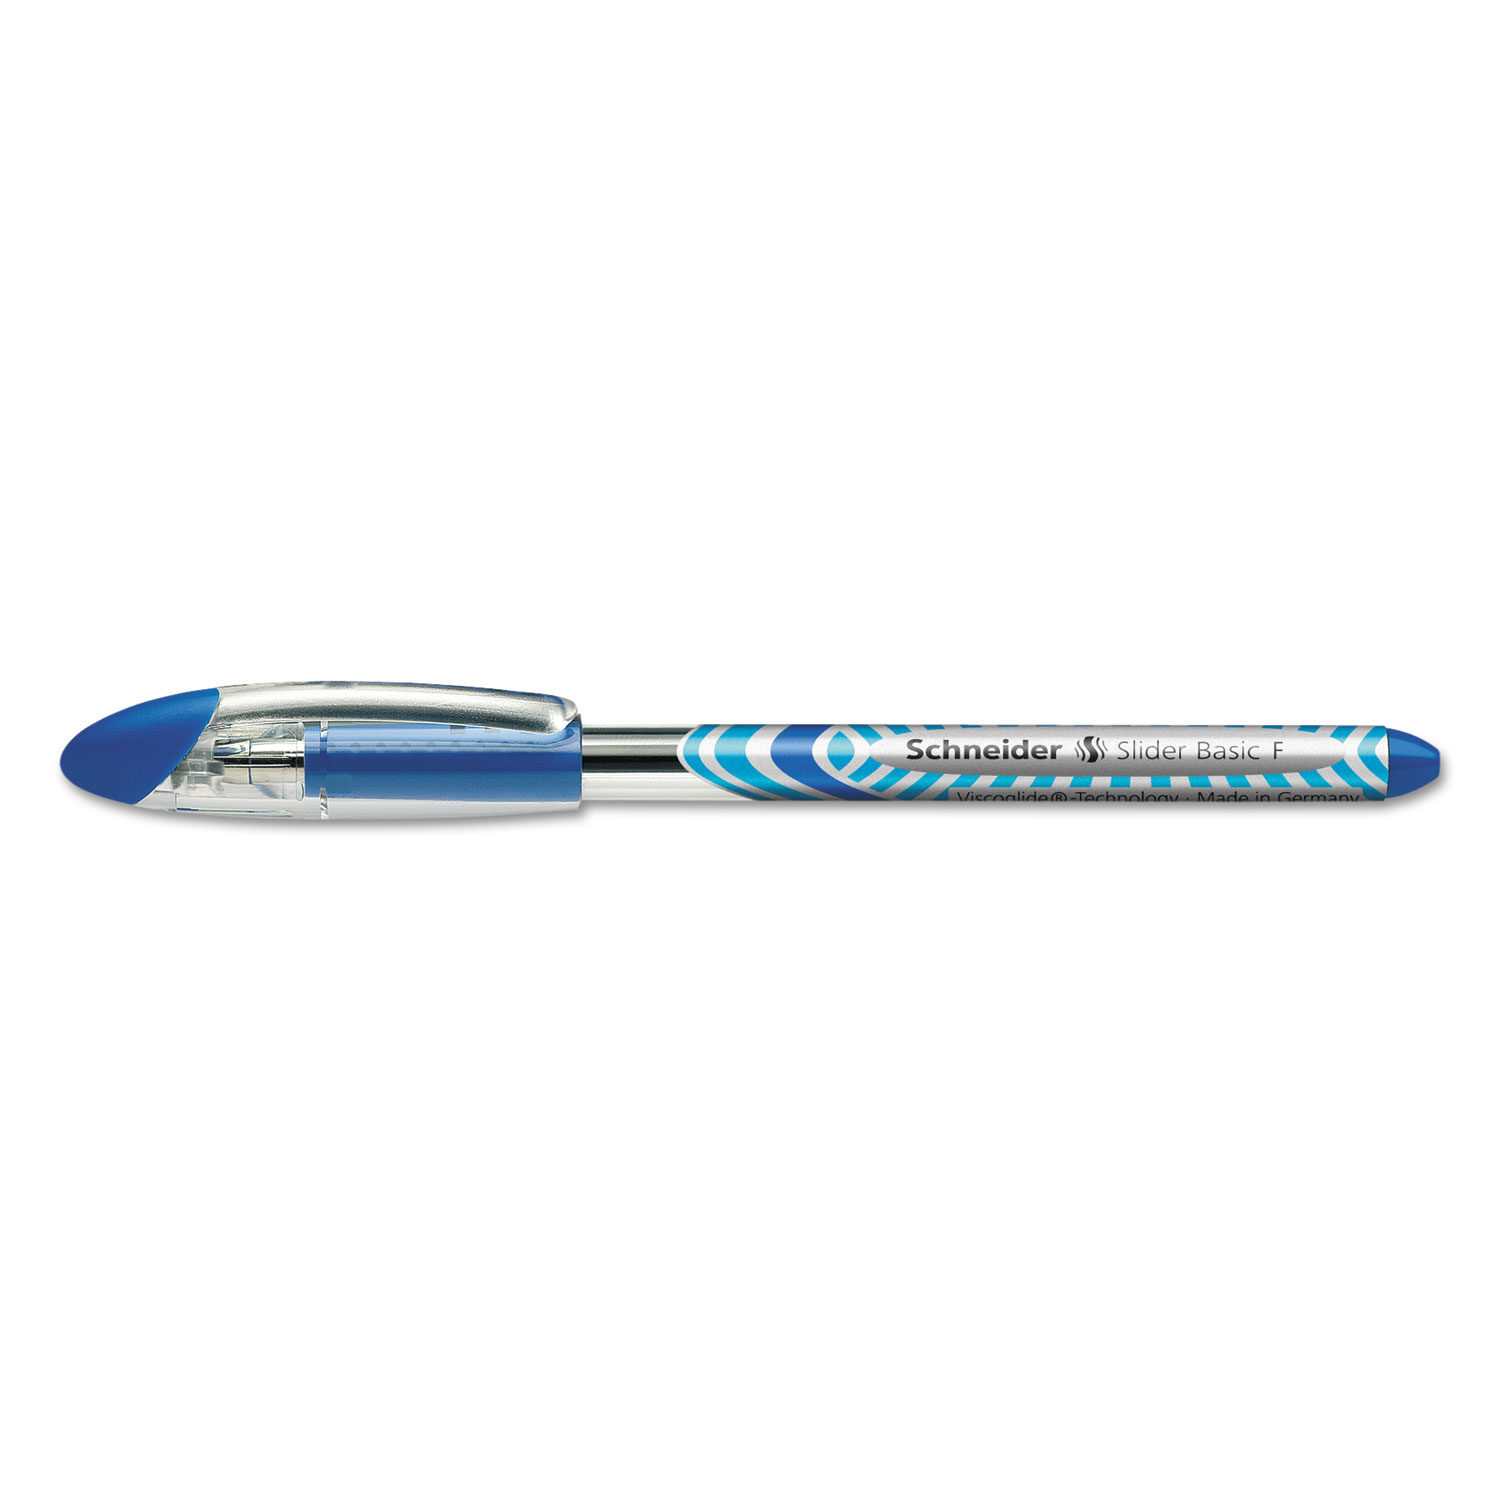  Stride 151003 Schneider Slider Stick Ballpoint Pen, 0.7mm, Blue Ink, Gold/Silver/Blue Barrel, 10/Box (STW151003) 